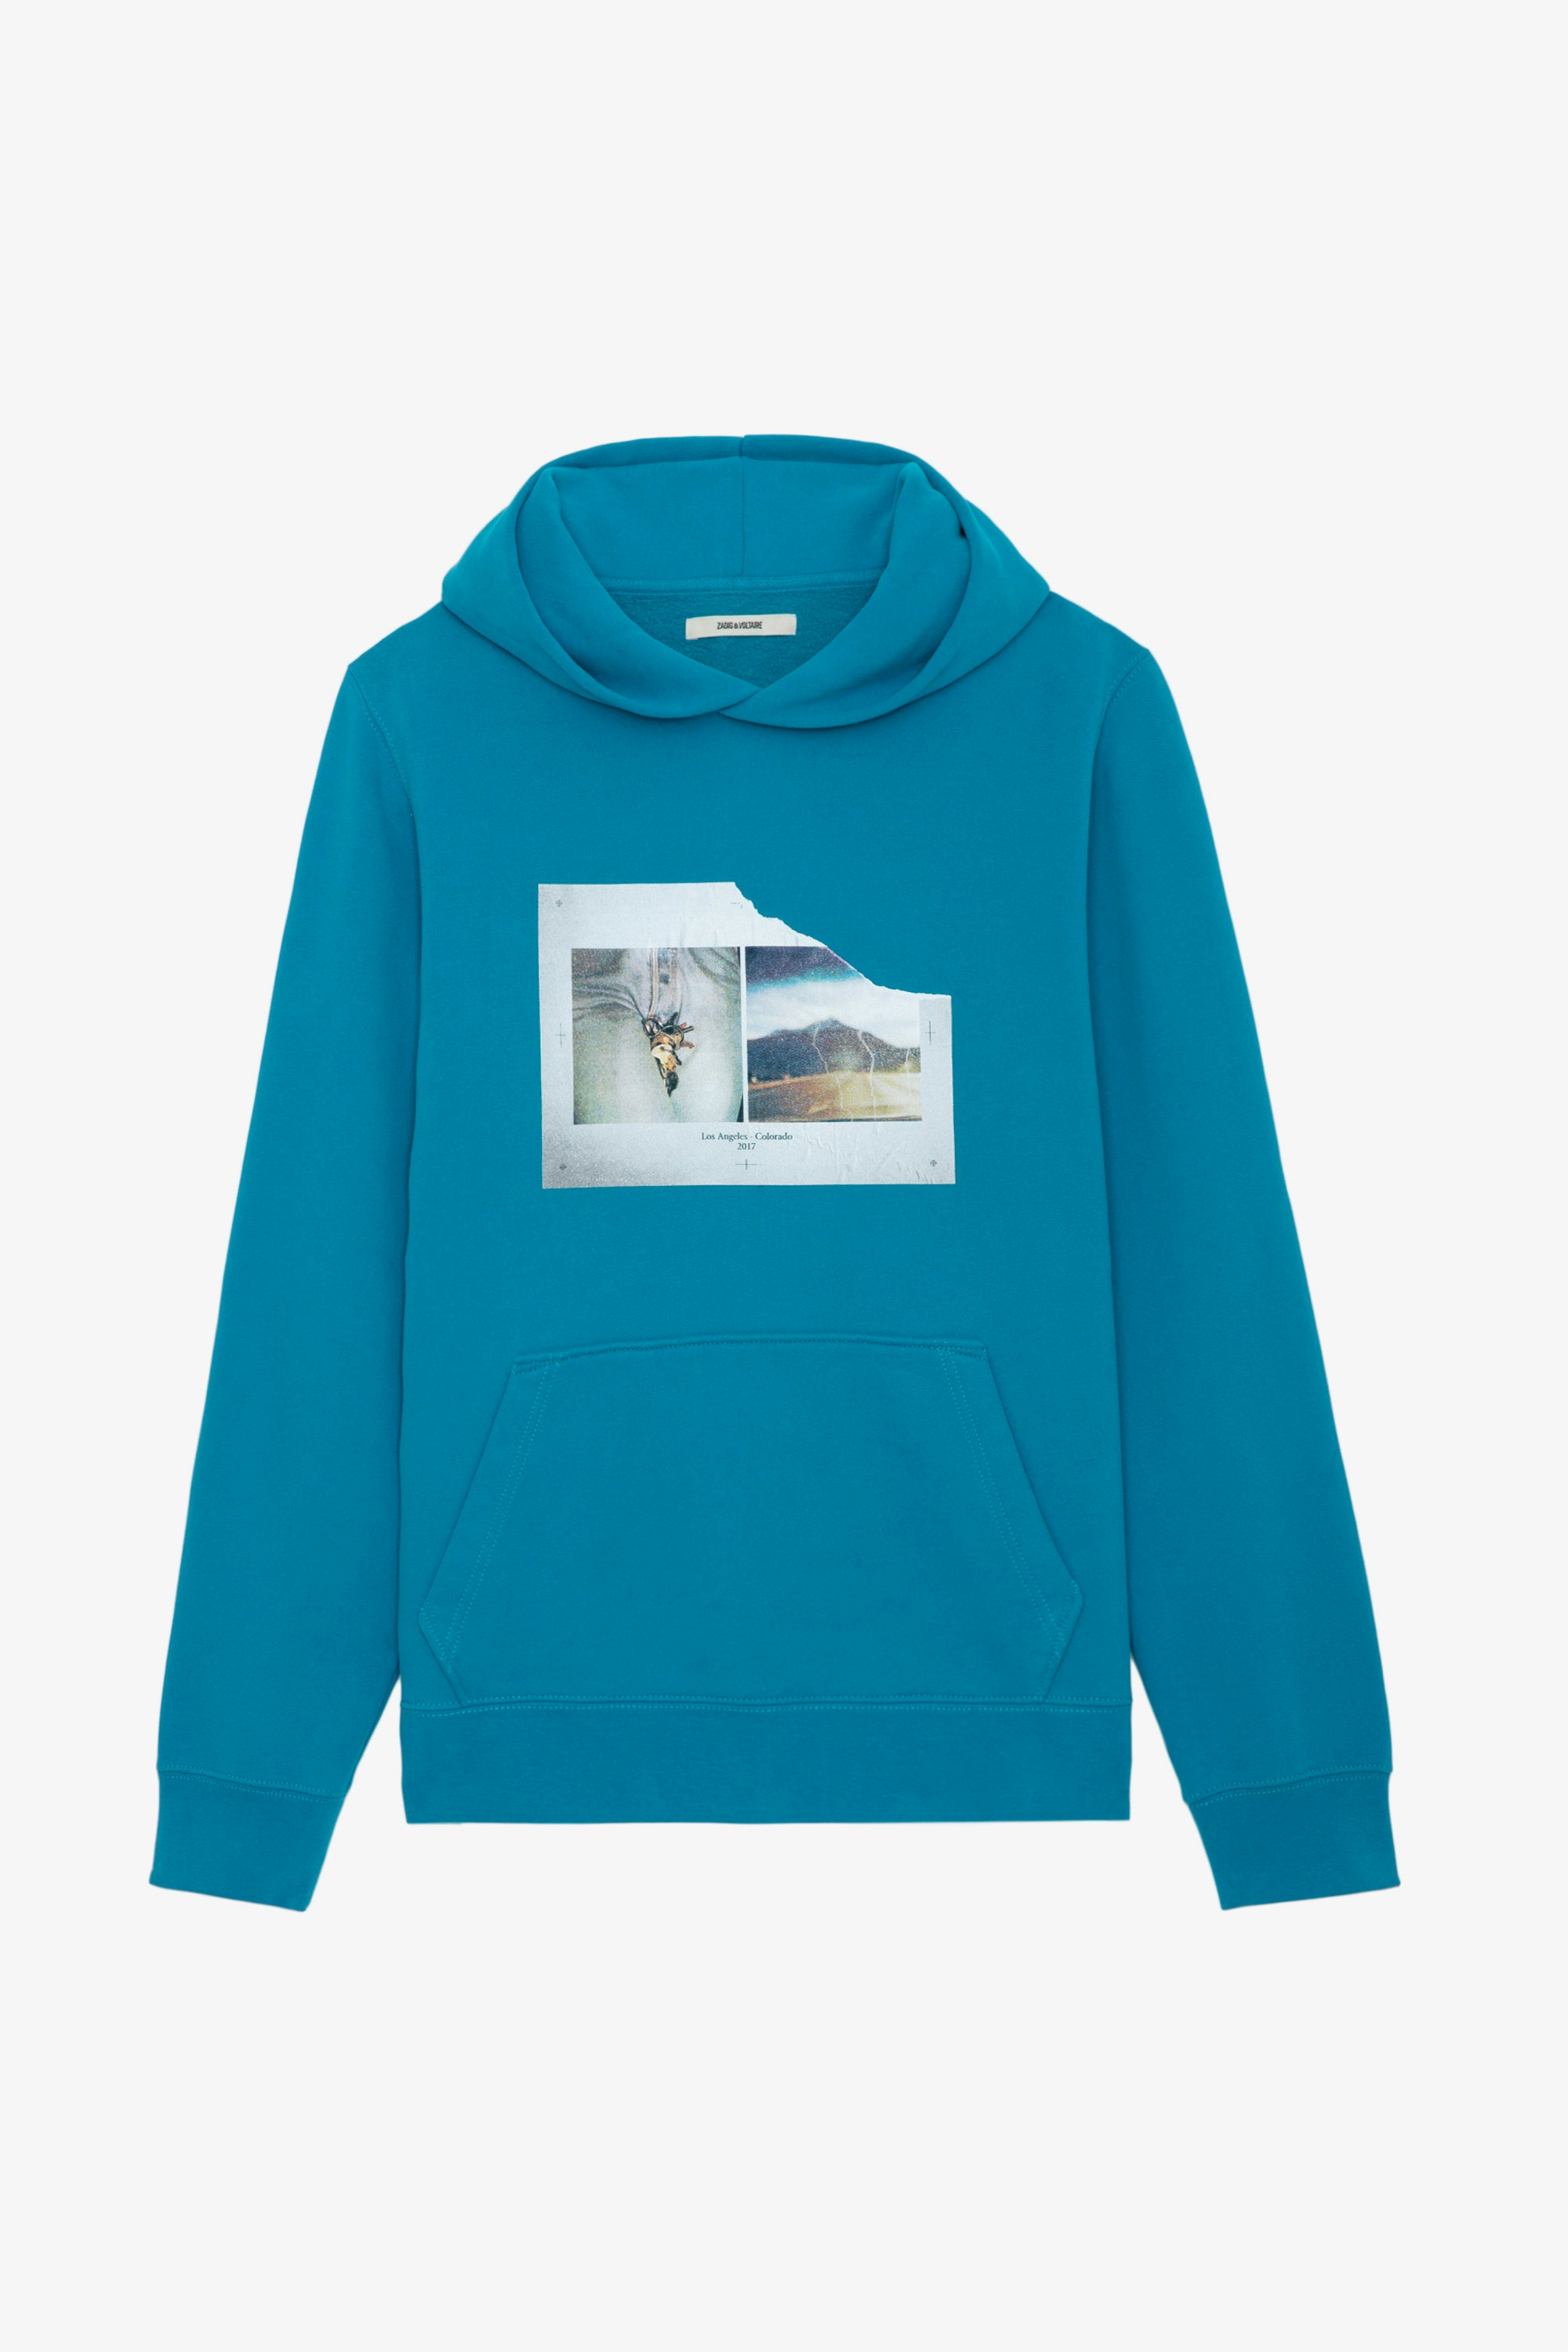 Sweatshirt Sanchi Photoprint - Sweatshirt à capuche bleu canard à manches longues, imprimés photoprint et message.